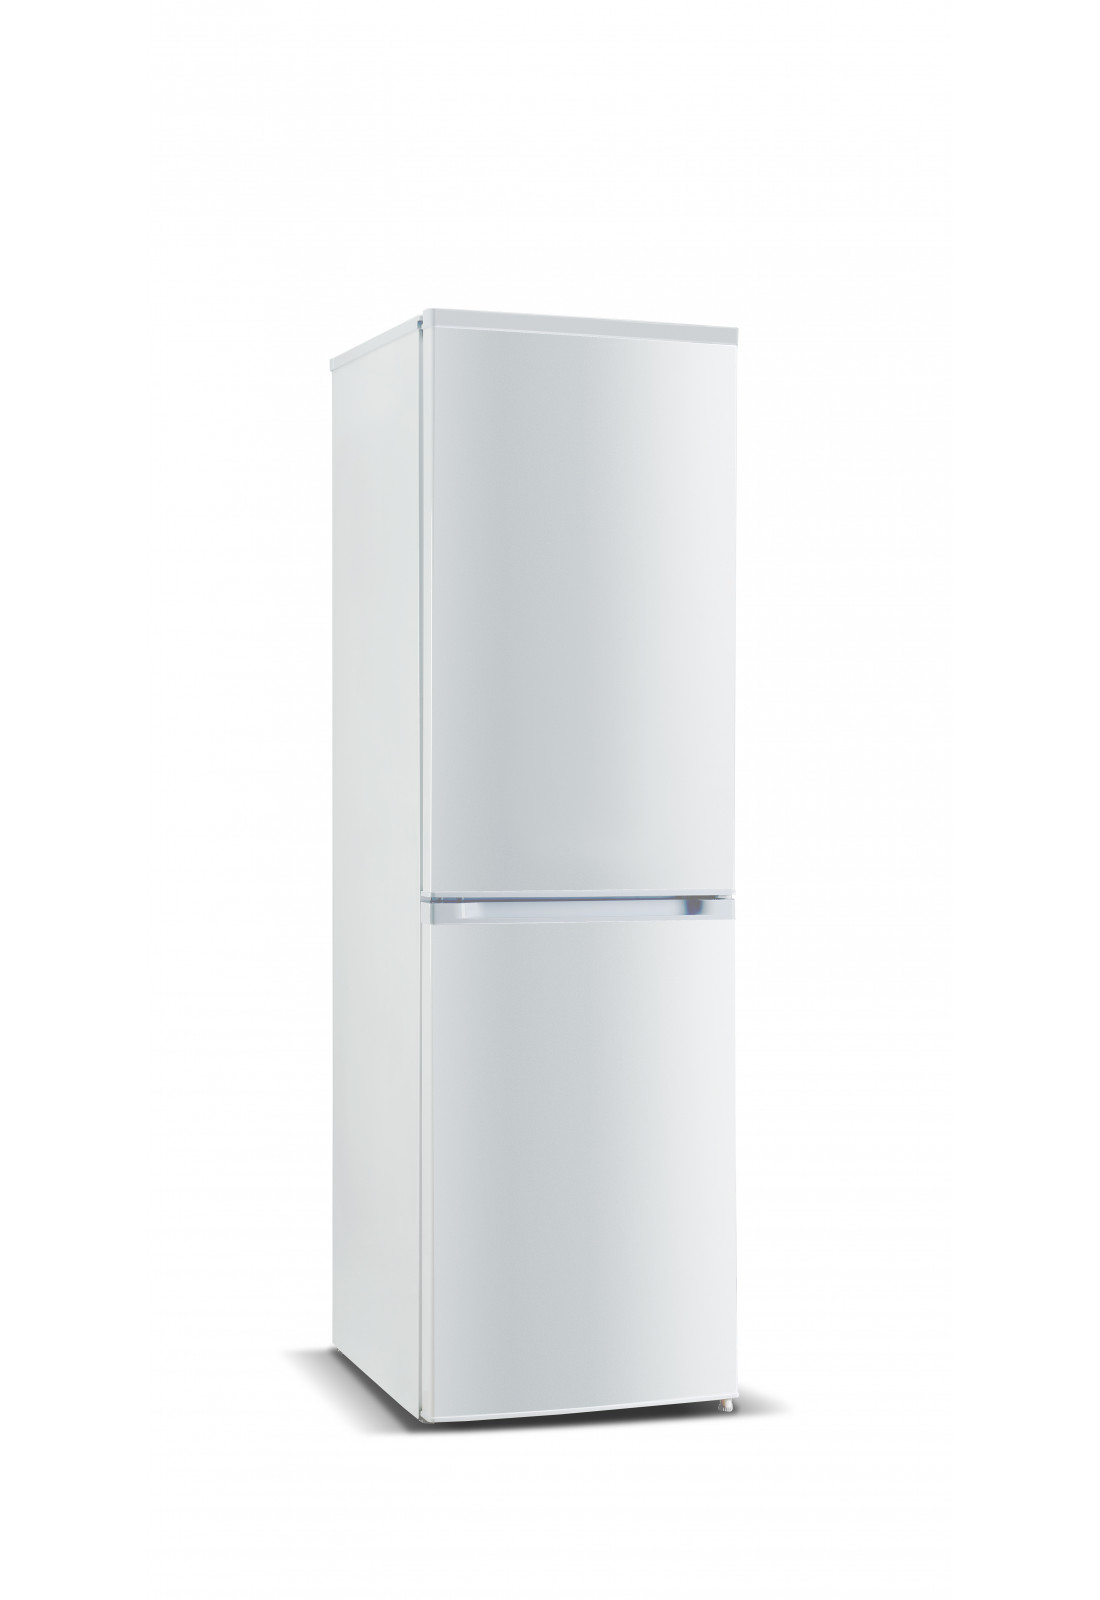 Дверь морозильной камеры холодильника NORD HR 239 S